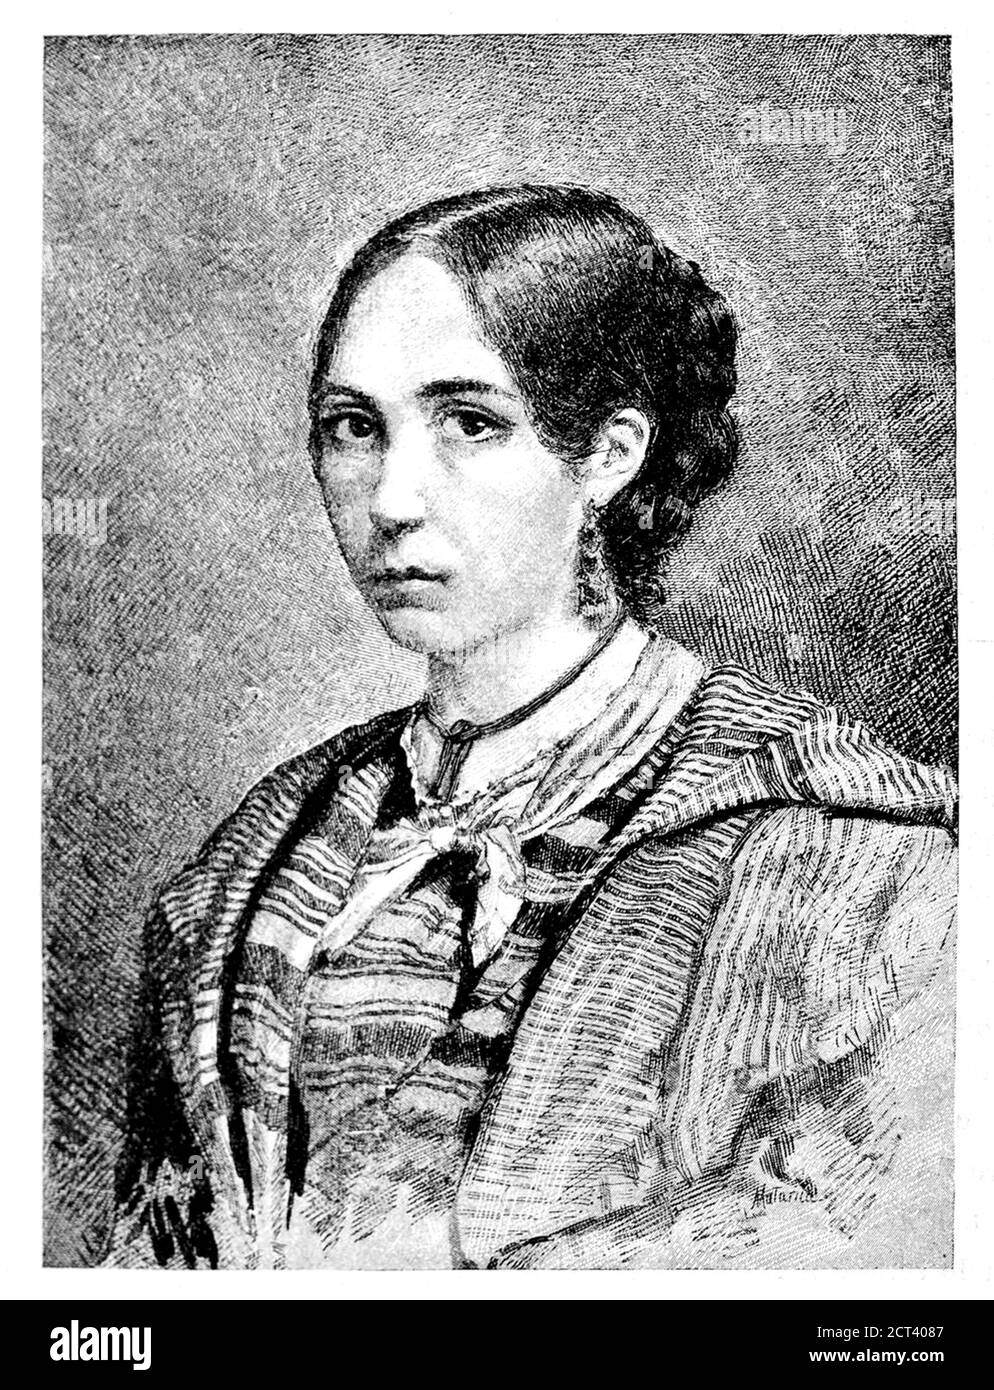 1849 c., ITALY : The brazilian revolutionary ANITA GARIBALDI ( 1821 - 1849 ), wife of italian military hero GIUSEPPE GARIBALDI ( 1807 - 1882 ). Portrait pubblished in book GARIBALDI E I SUOI TEMPI by Jesse Mario , illustrated by painter EDOARDO MATANIA , pubblished in 1884 . - POLITICO - POLITICA - POLITIC - Unità d'Italia - RISORGIMENTO - ITALIA - FOTO STORICHE - HISTORY - incisione - engraving - illustrazione - illustration - Ana Maria de Jesus RIBEIRO DA SILVA - chignon ---  Archivio GBB Stock Photo